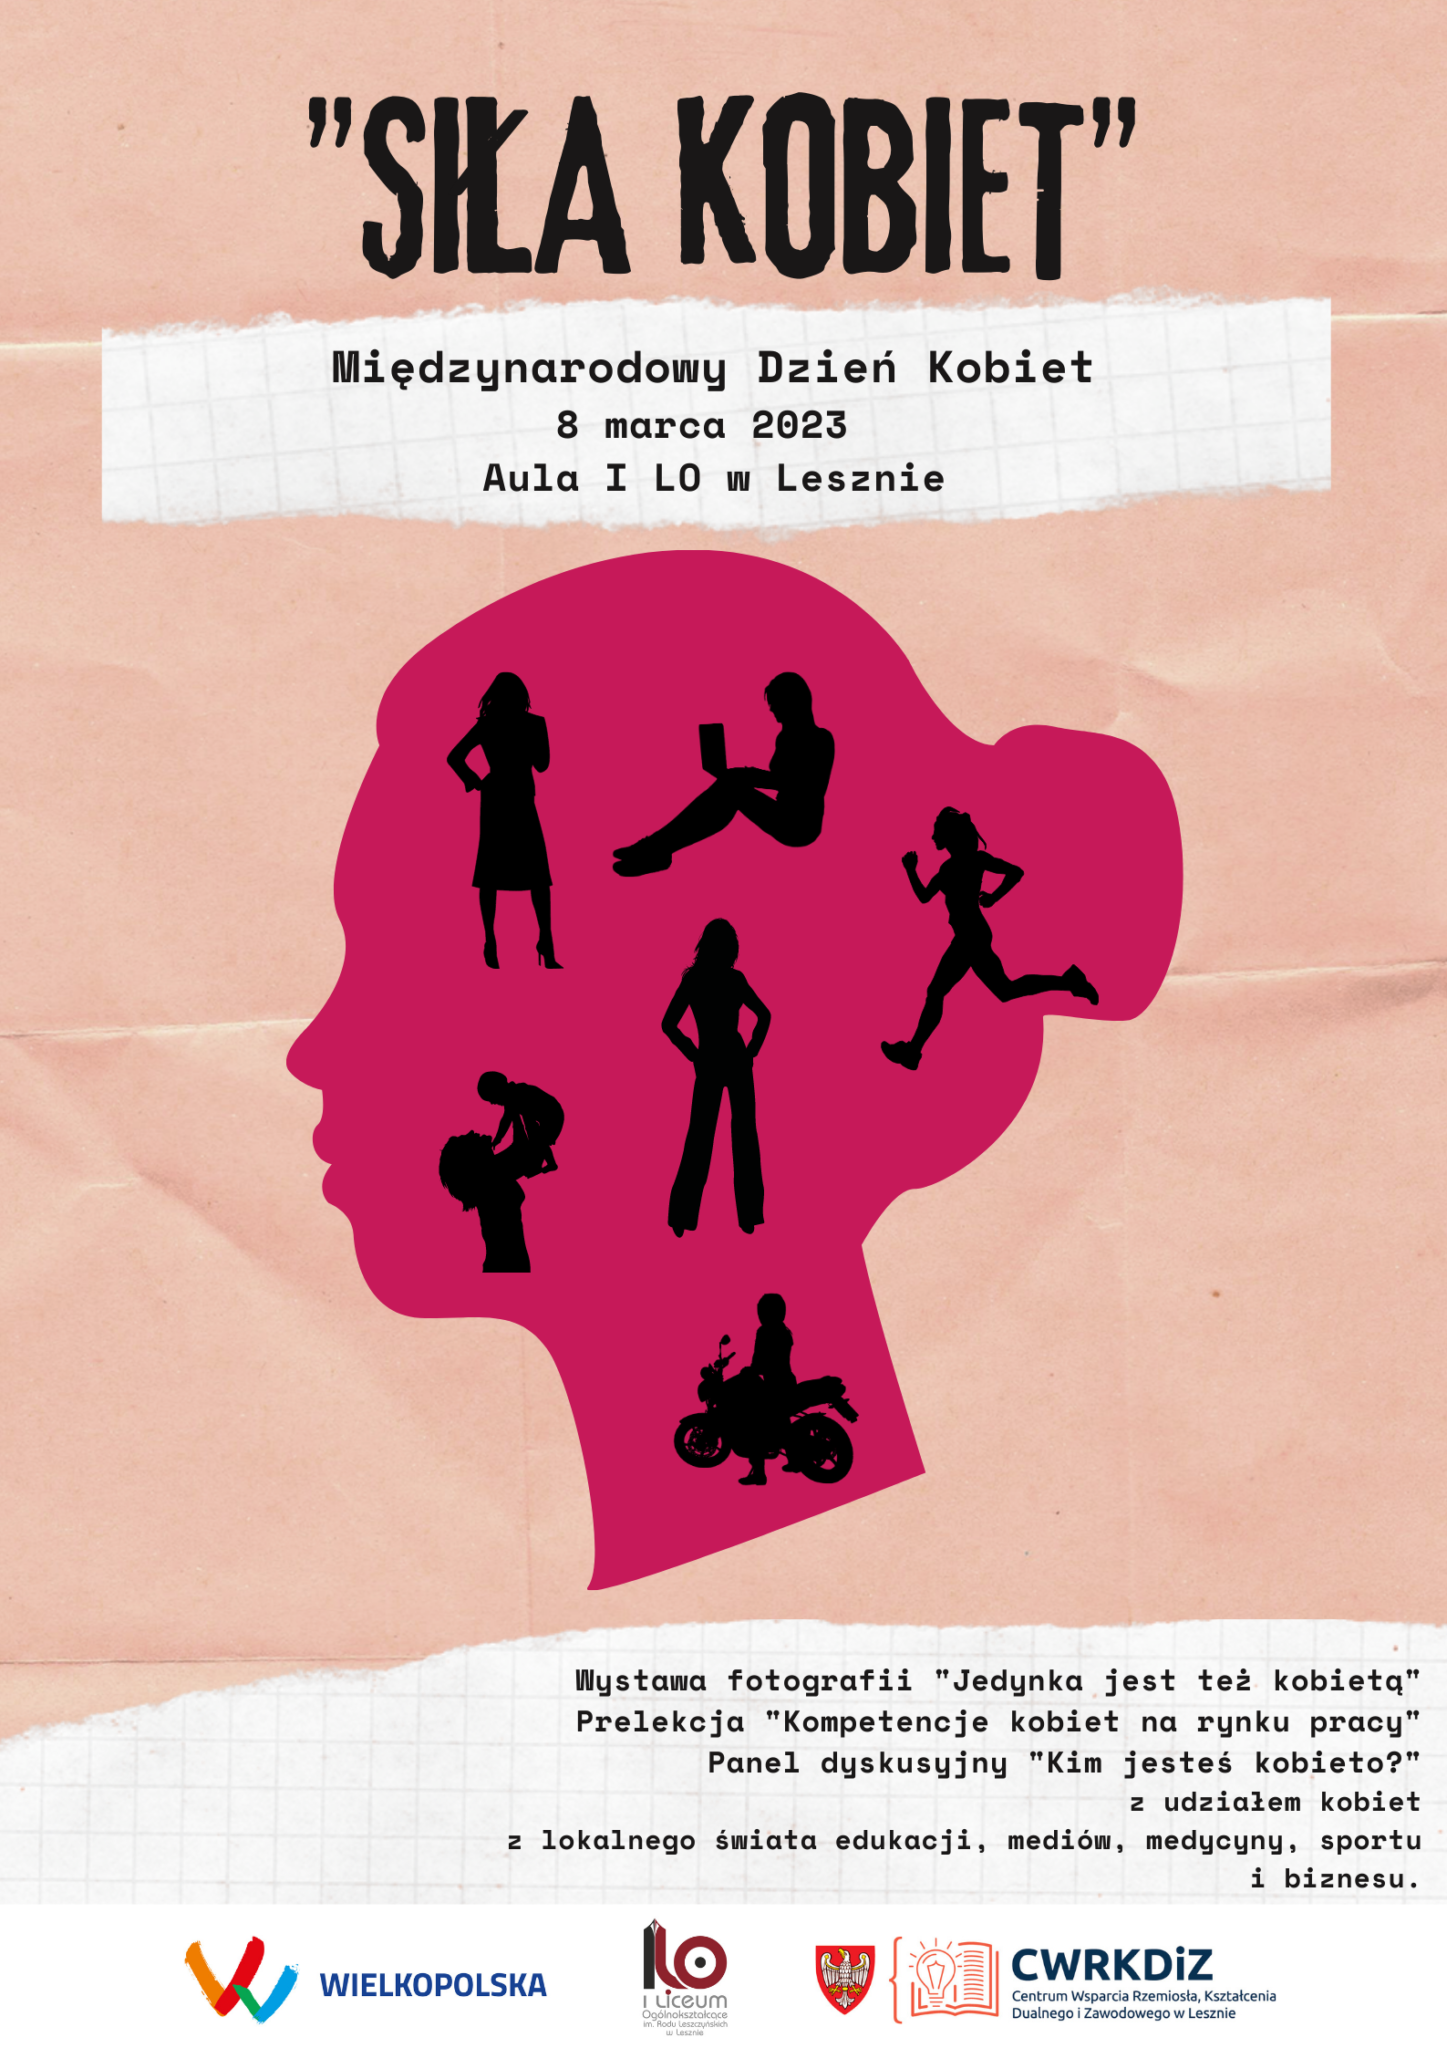 Plakat prezentuje nazwę wydarzenia, datę i miejsce oraz różową głowę kobiety, w której znajdują się ciemne sylwetki kobiet uprawiające różne aktywności. Na dole plakatu tematyka wydarzenia oraz logotypy: Wielkopolski, CWRKDiZ w Lesznie i I Liceum Ogólnokształcącego w Lesznie.